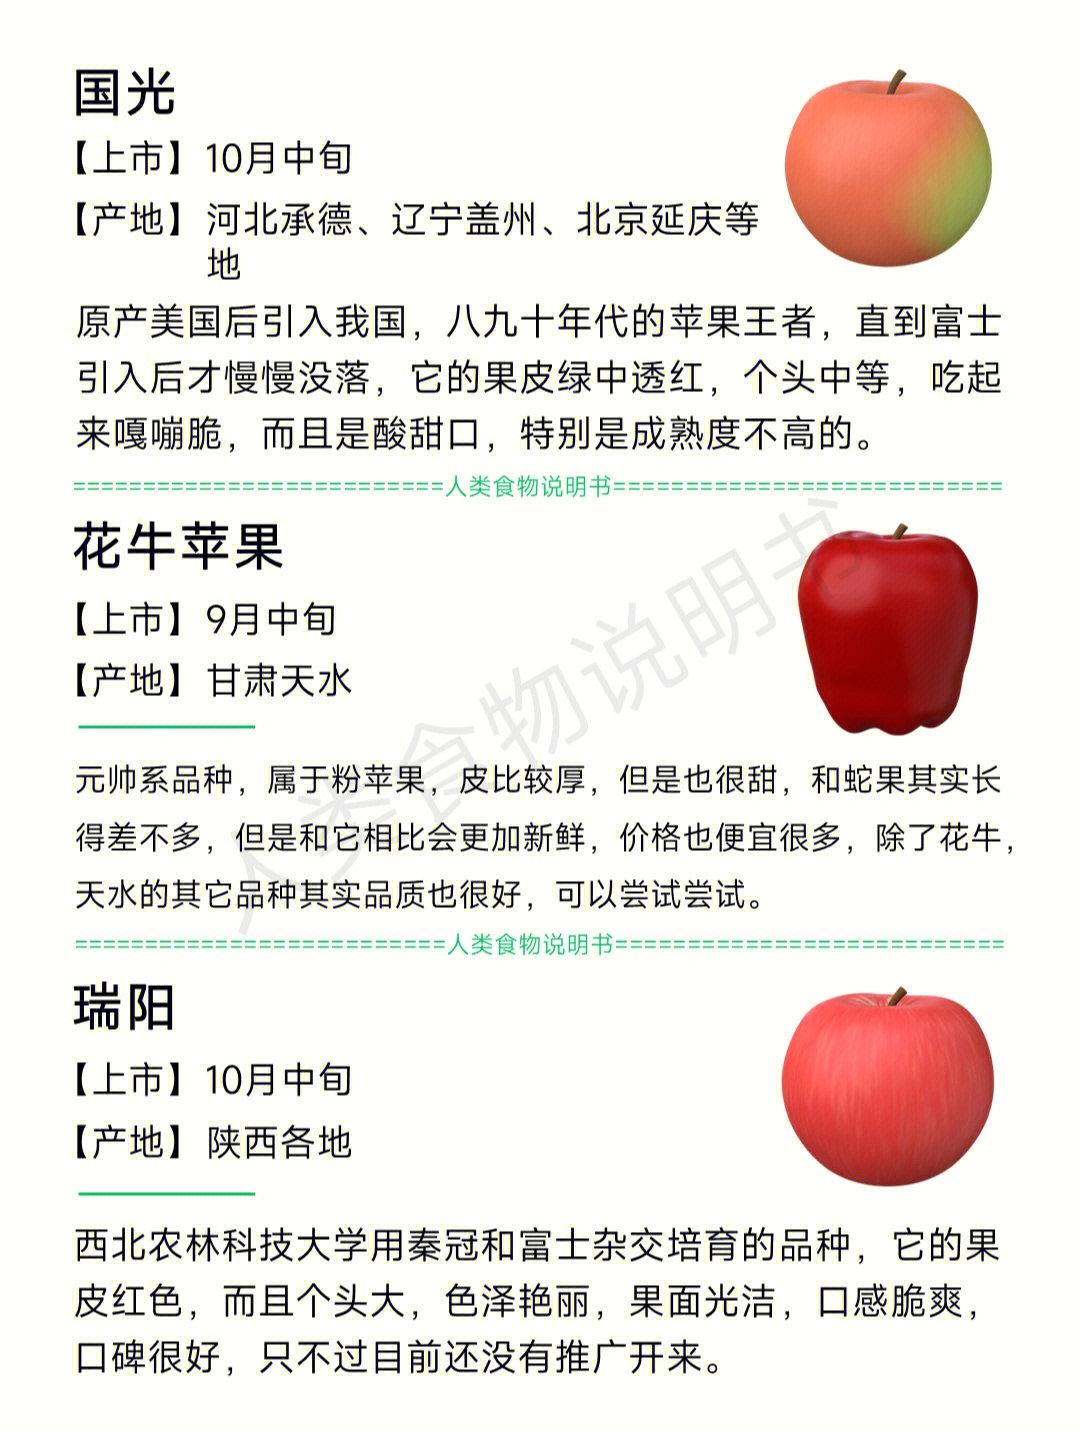 苹果品种大全图片名字，苹果的各个种类介绍